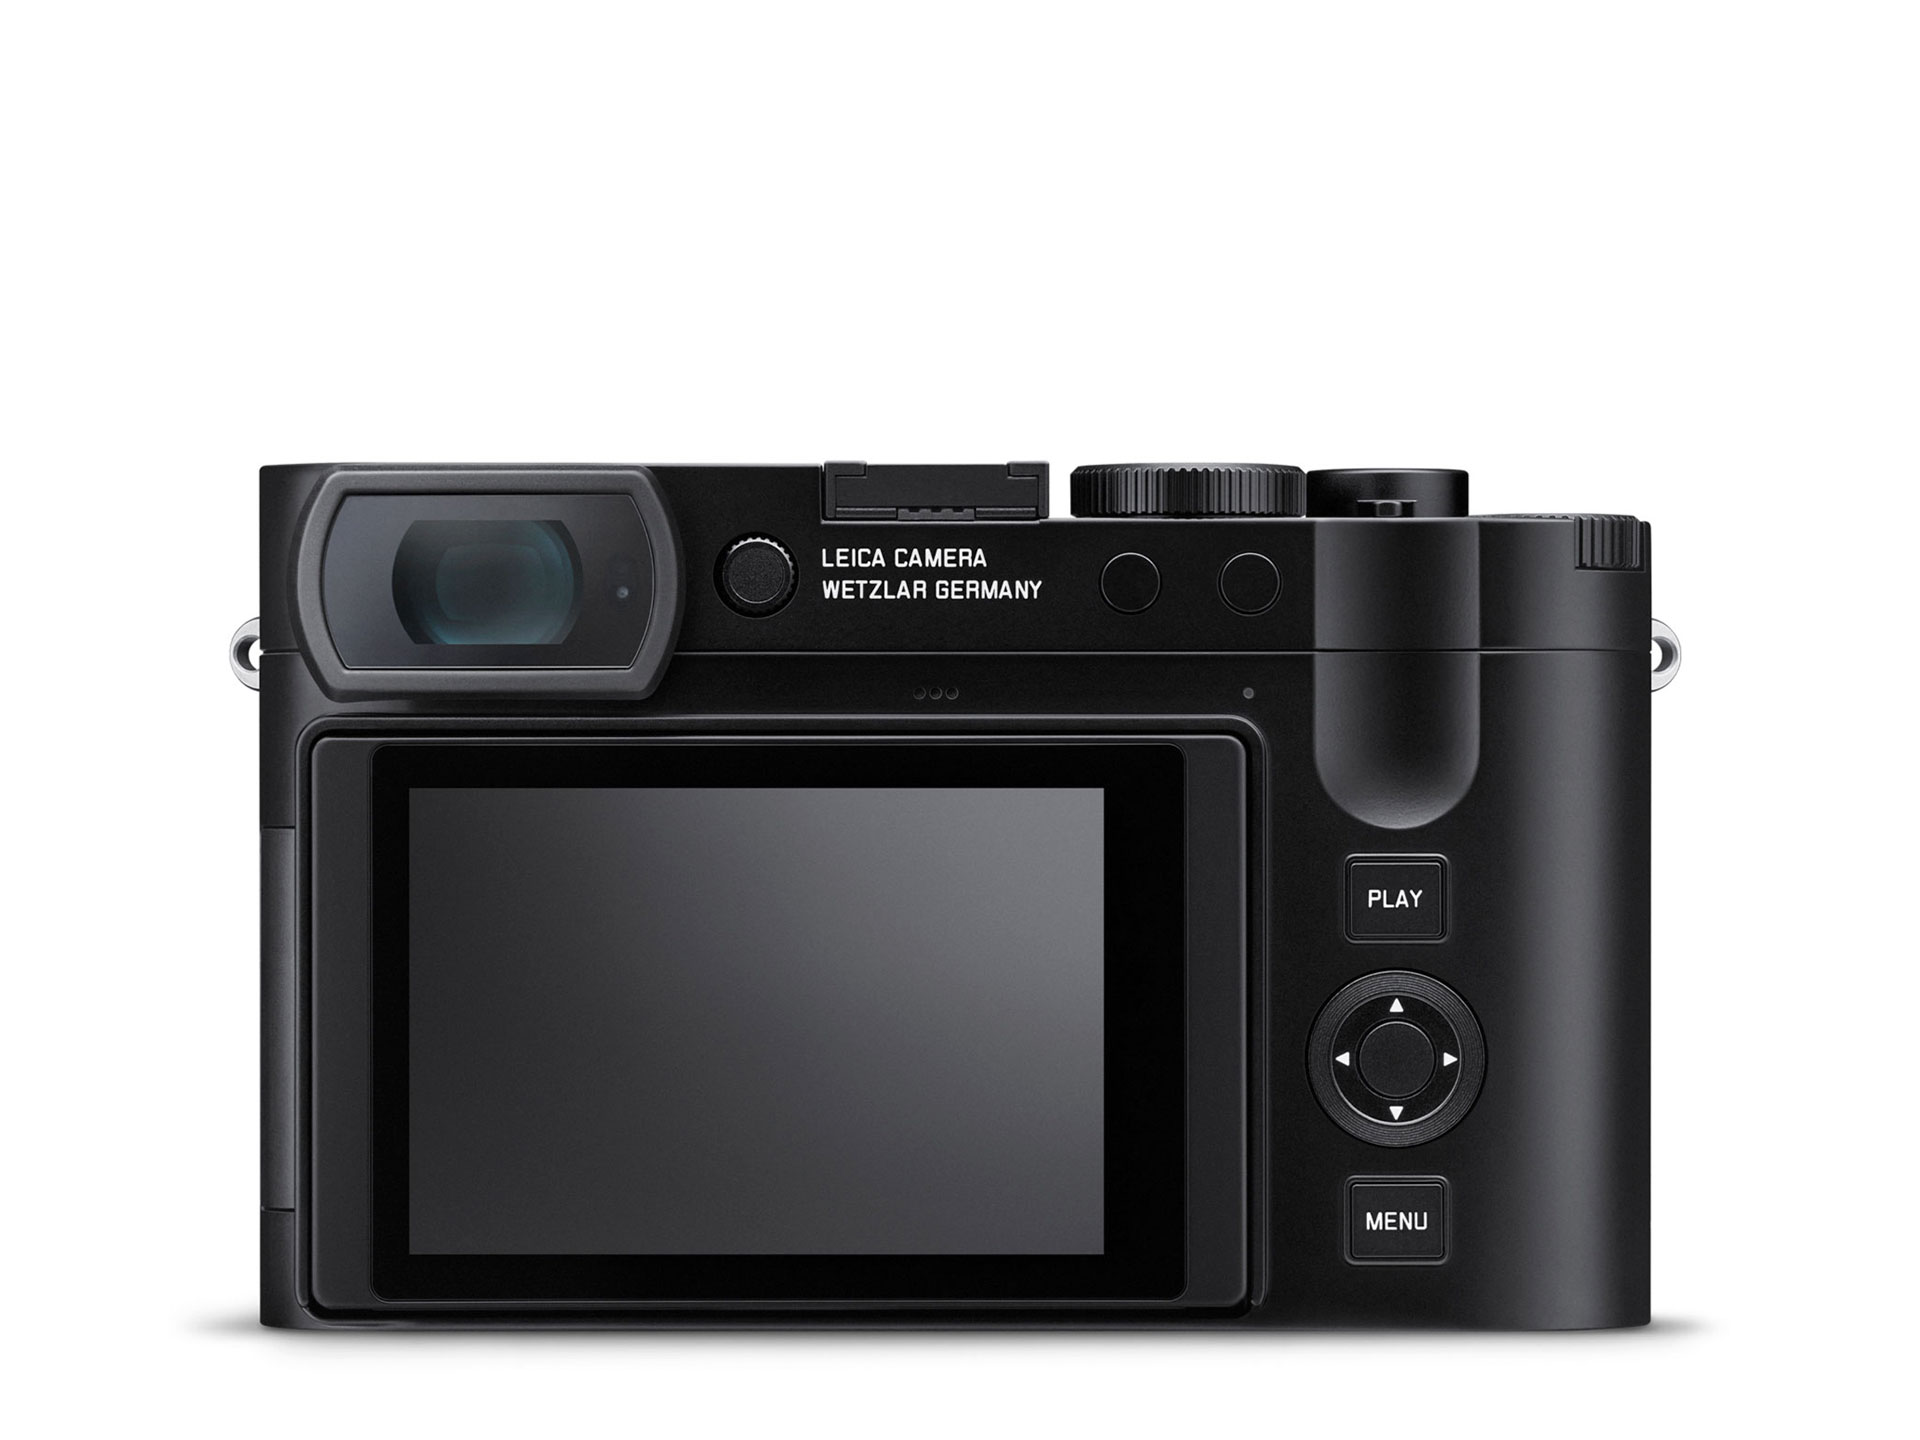 ばらこ出品商品G04)【美品】Leica ライカ C1 ブラック コンパクトフィルムカメラ